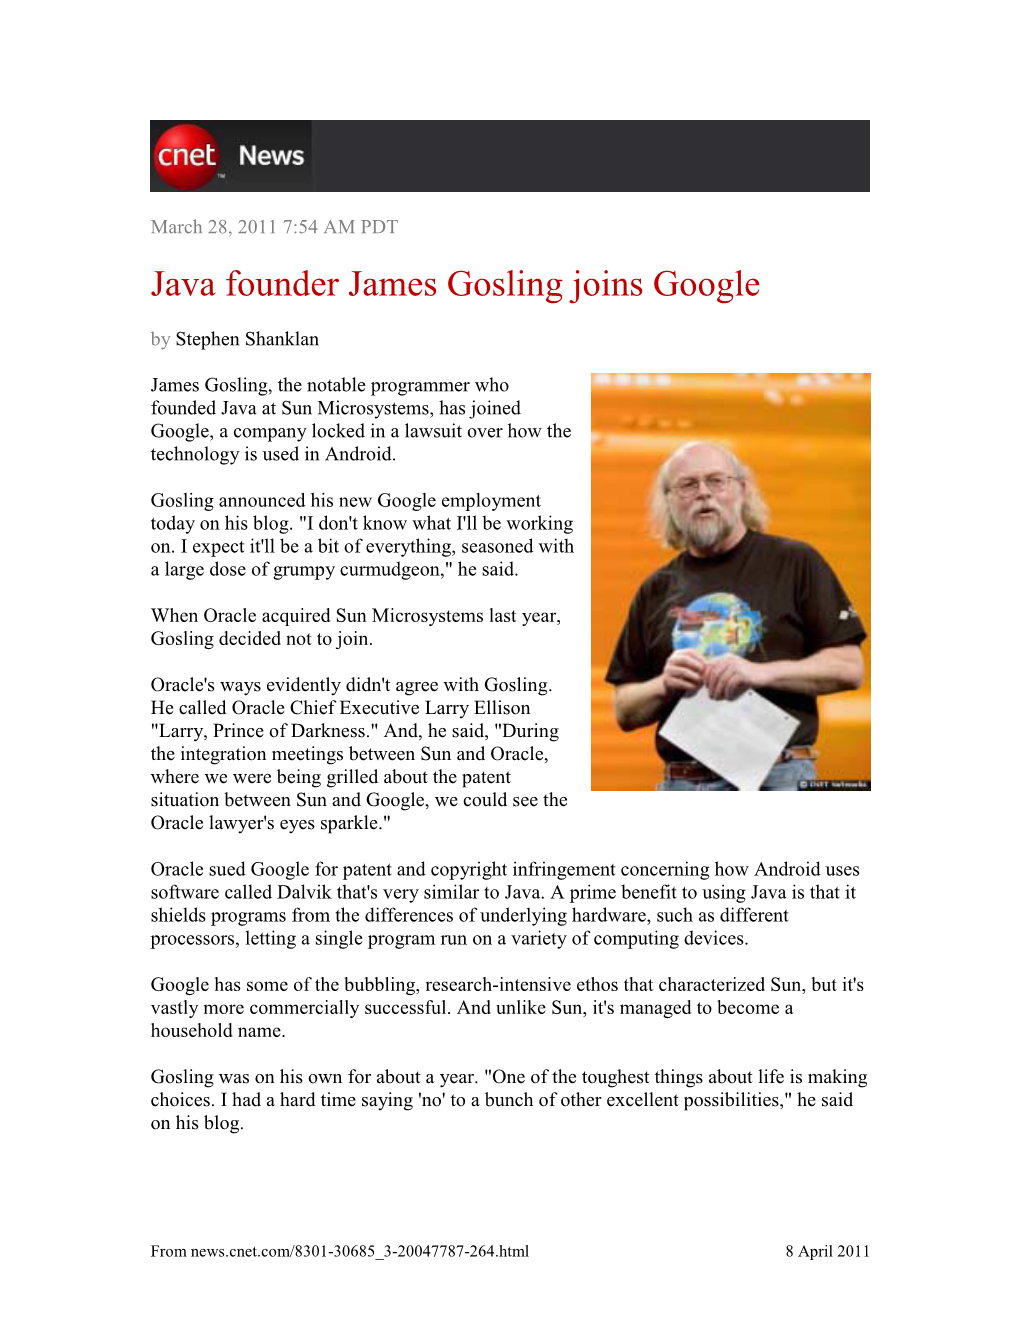 Java Founder James Gosling Joins Google